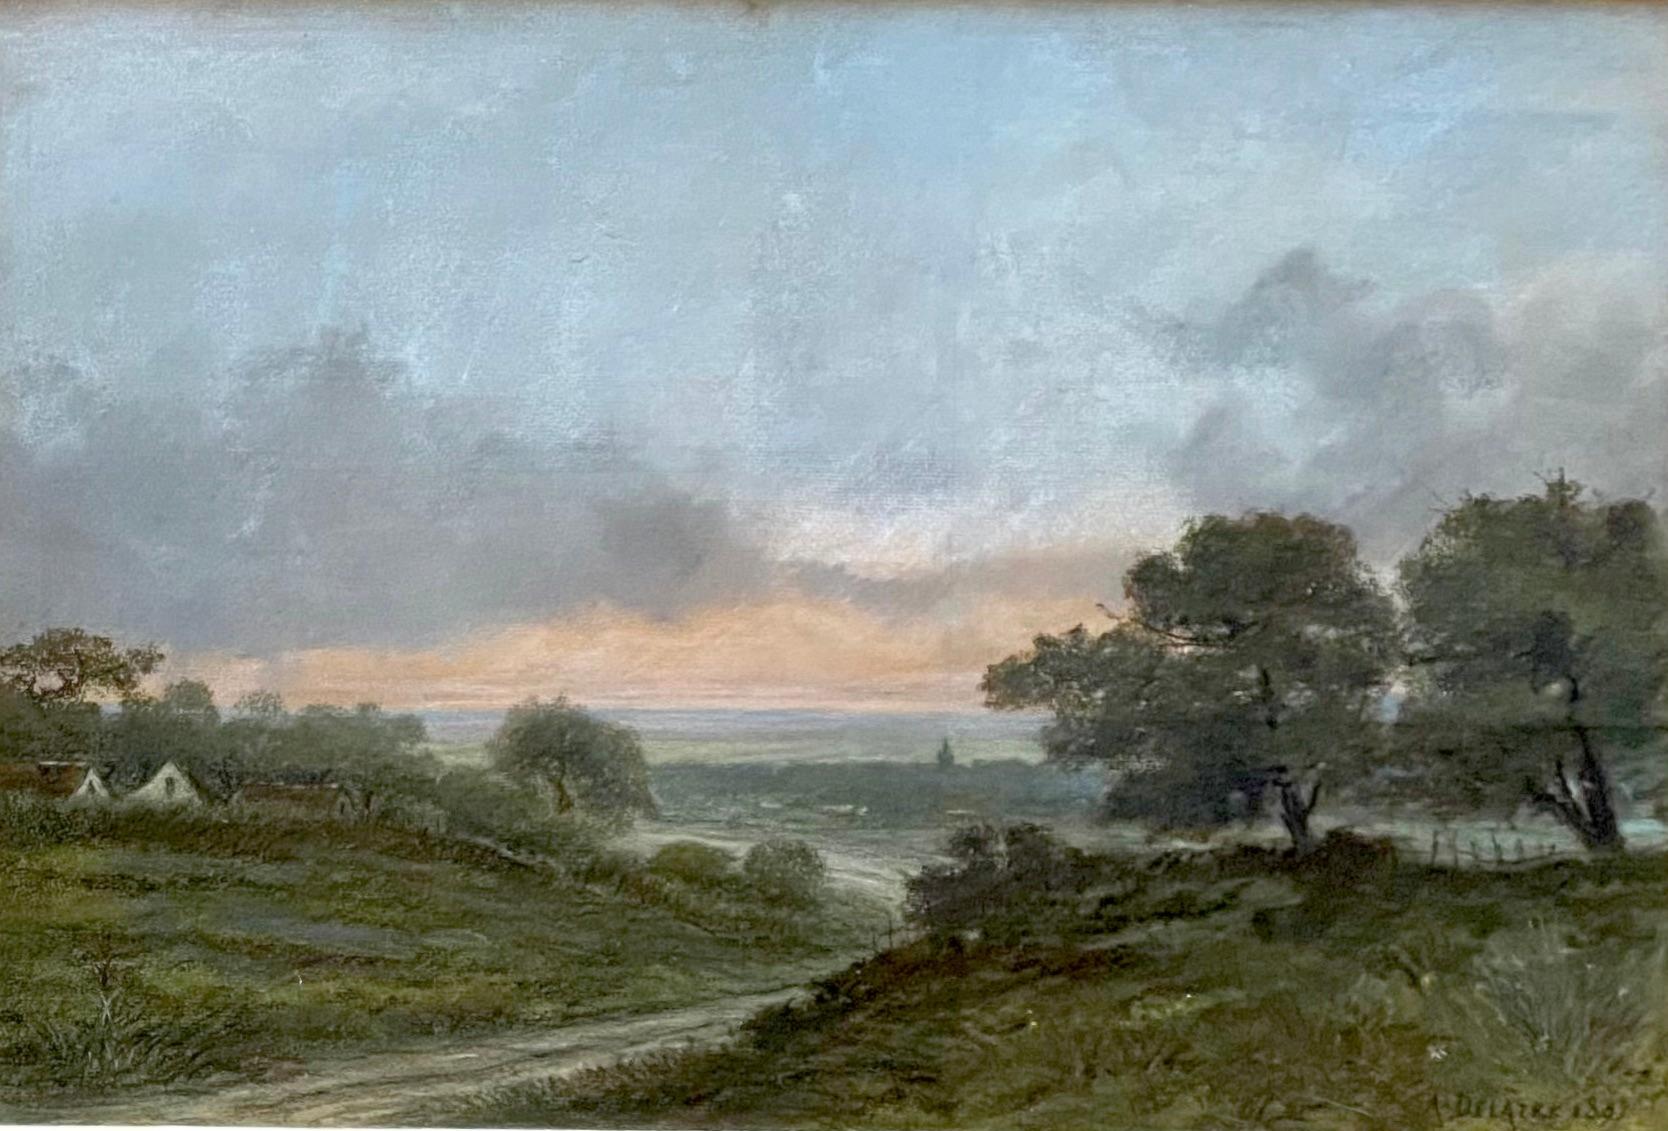 Paysage d'été de Delâtre, l'ami artiste français de Whistler, connexion Barbizon - Art de Auguste Delatre